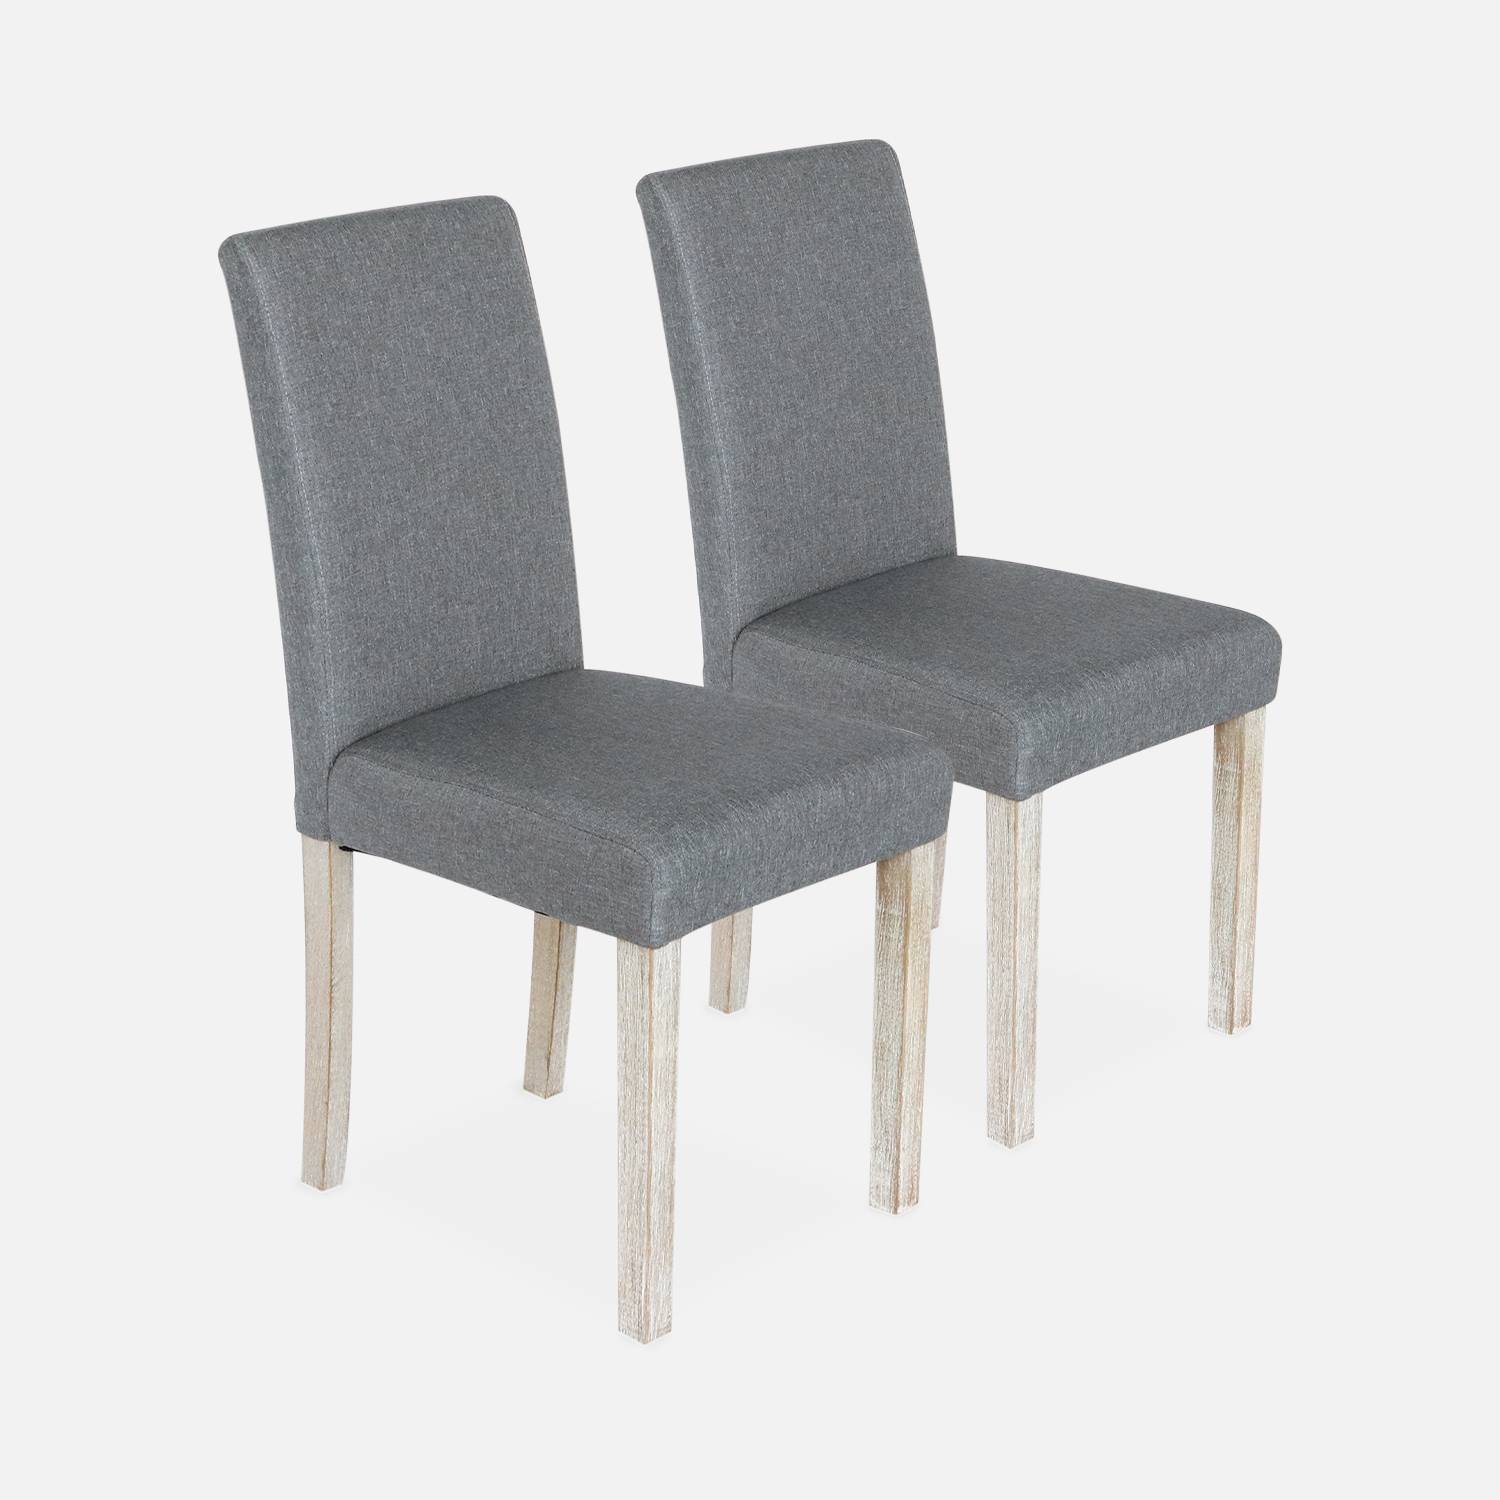 Set di 2 sedie - Rita - sedie in tessuto, gambe in legno Photo3